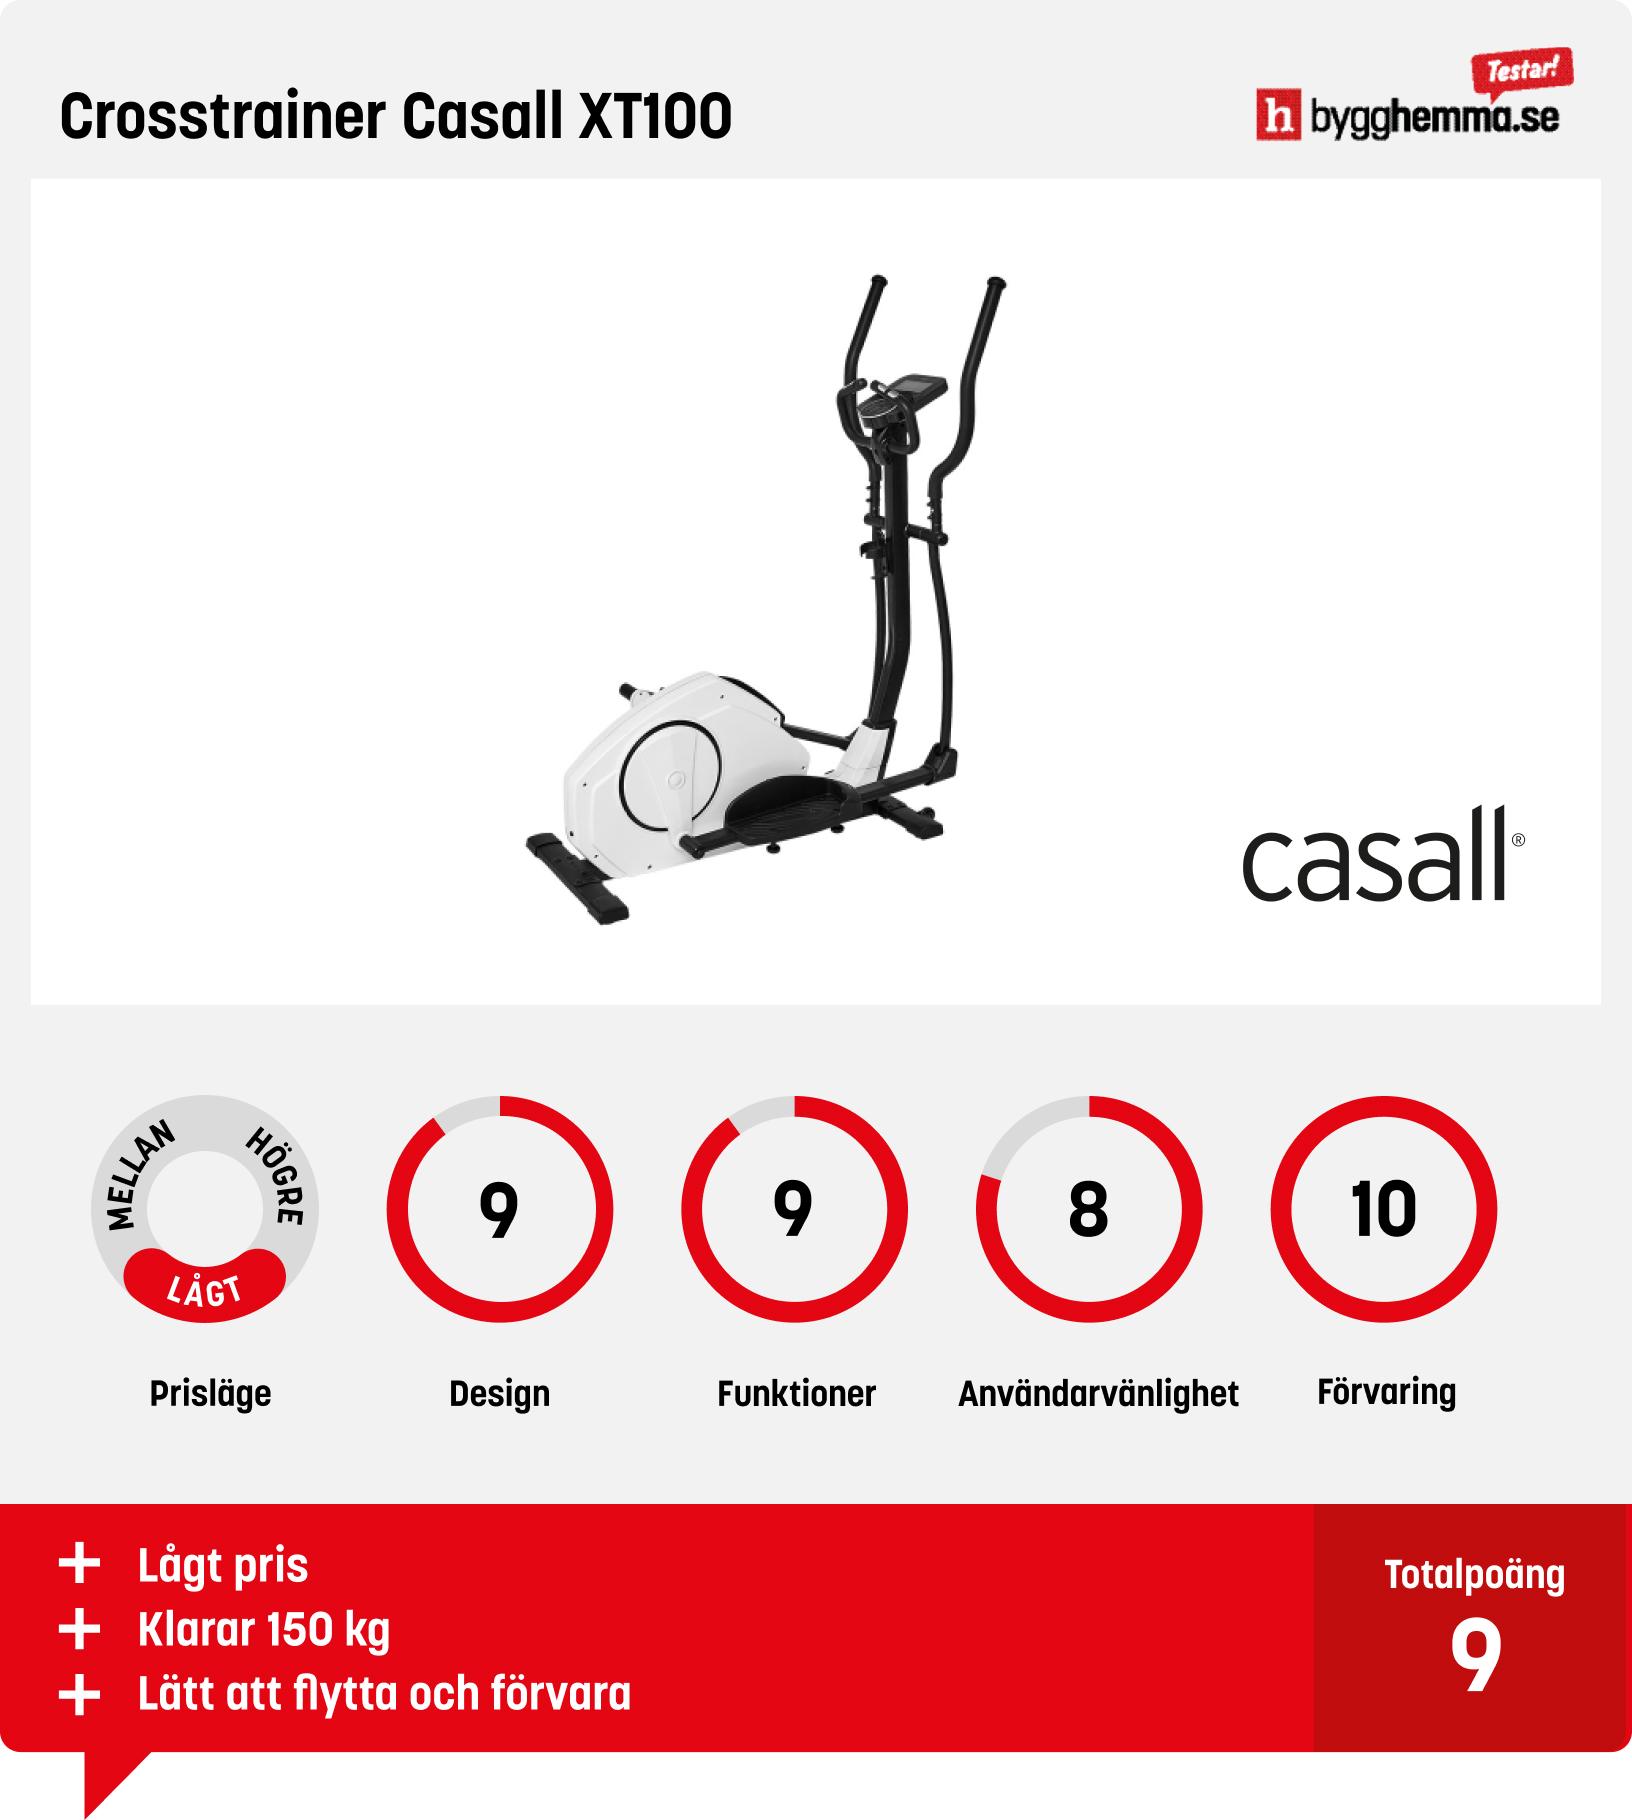 Crosstrainer bäst i test - Crosstrainer Casall XT100